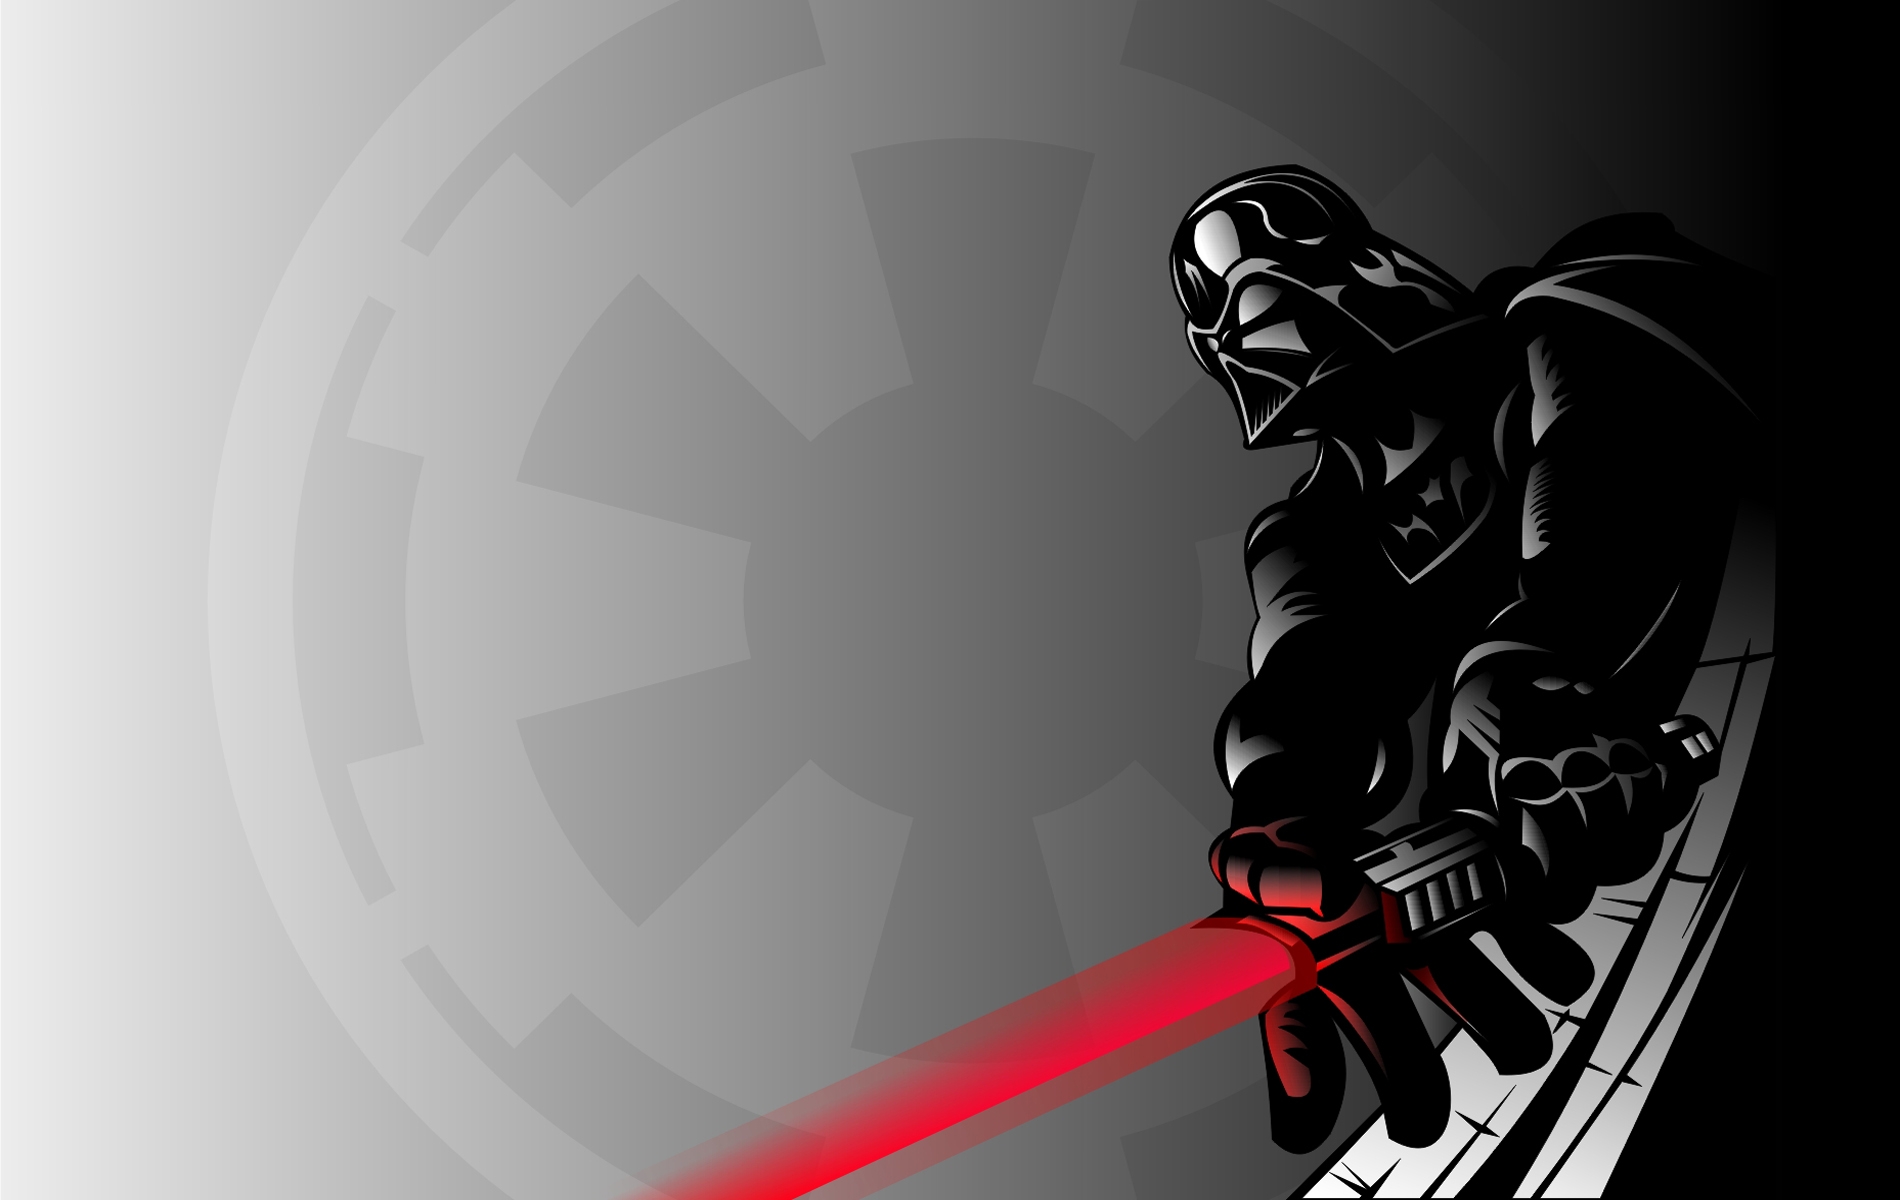 Darth Vader in high definition desktop wallpaper.